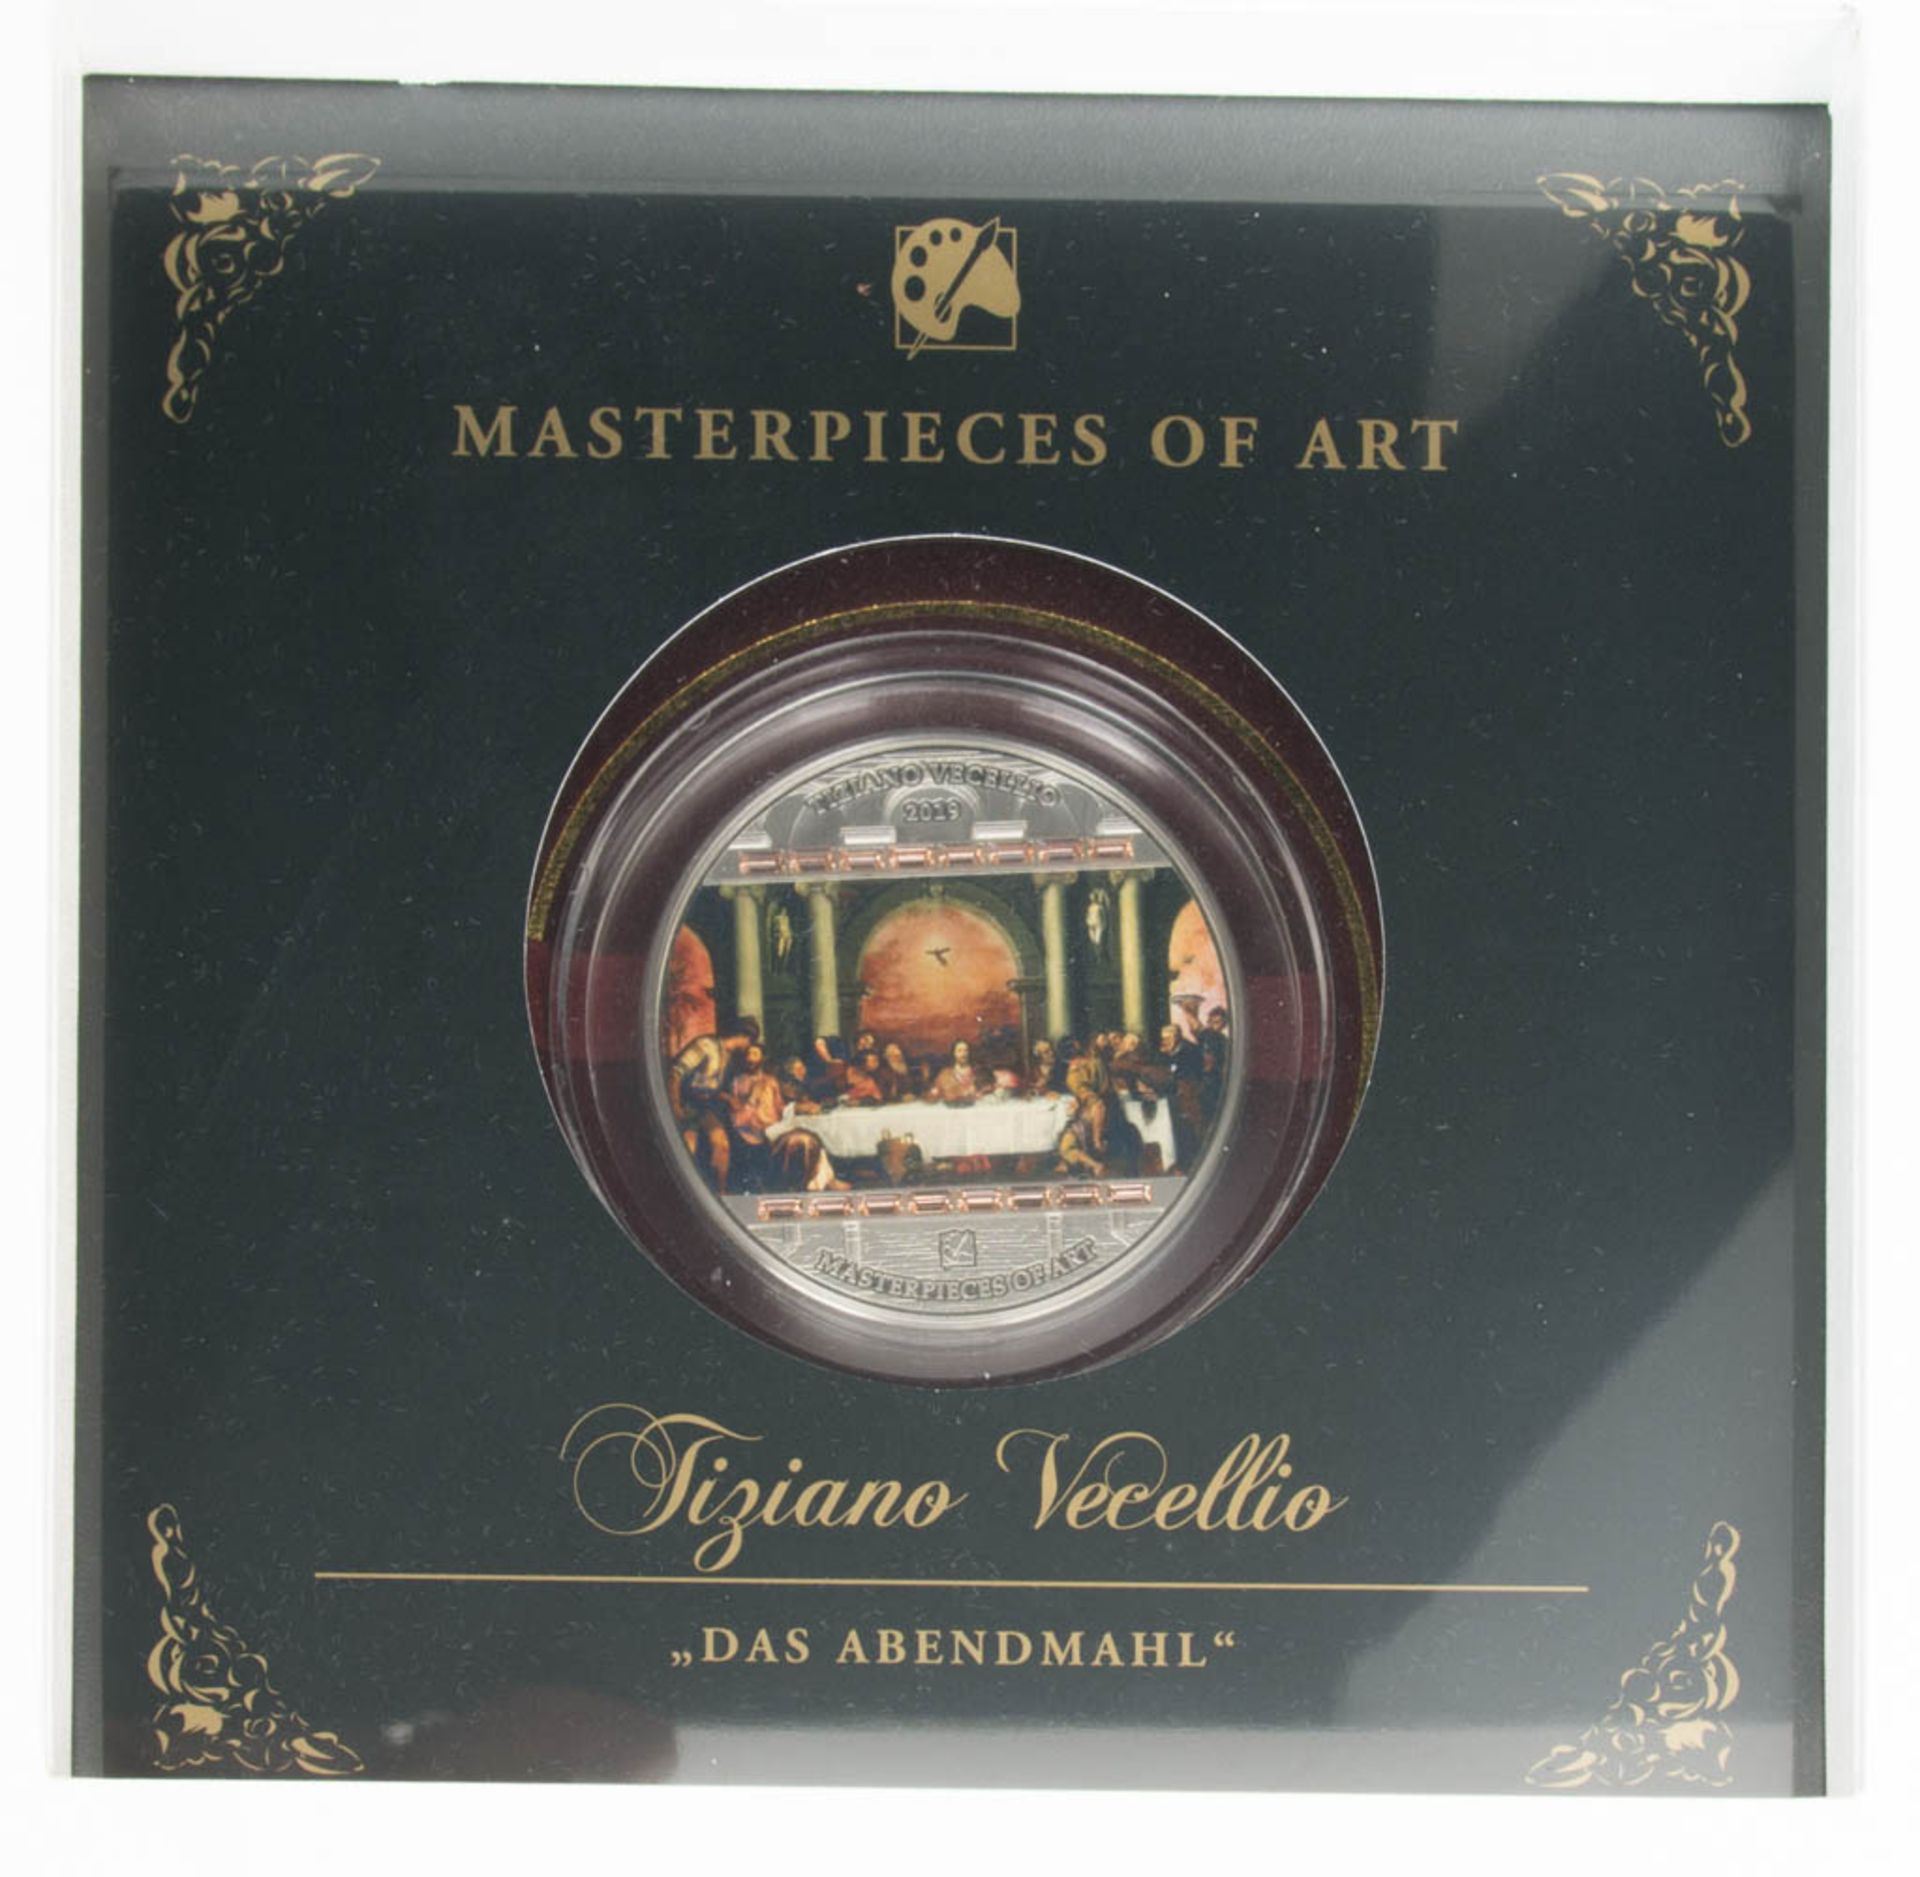 20 US-Dollar Silbermünze - "Das Letzte Abendmahl" - Masterpieces of Art - Bild 3 aus 3